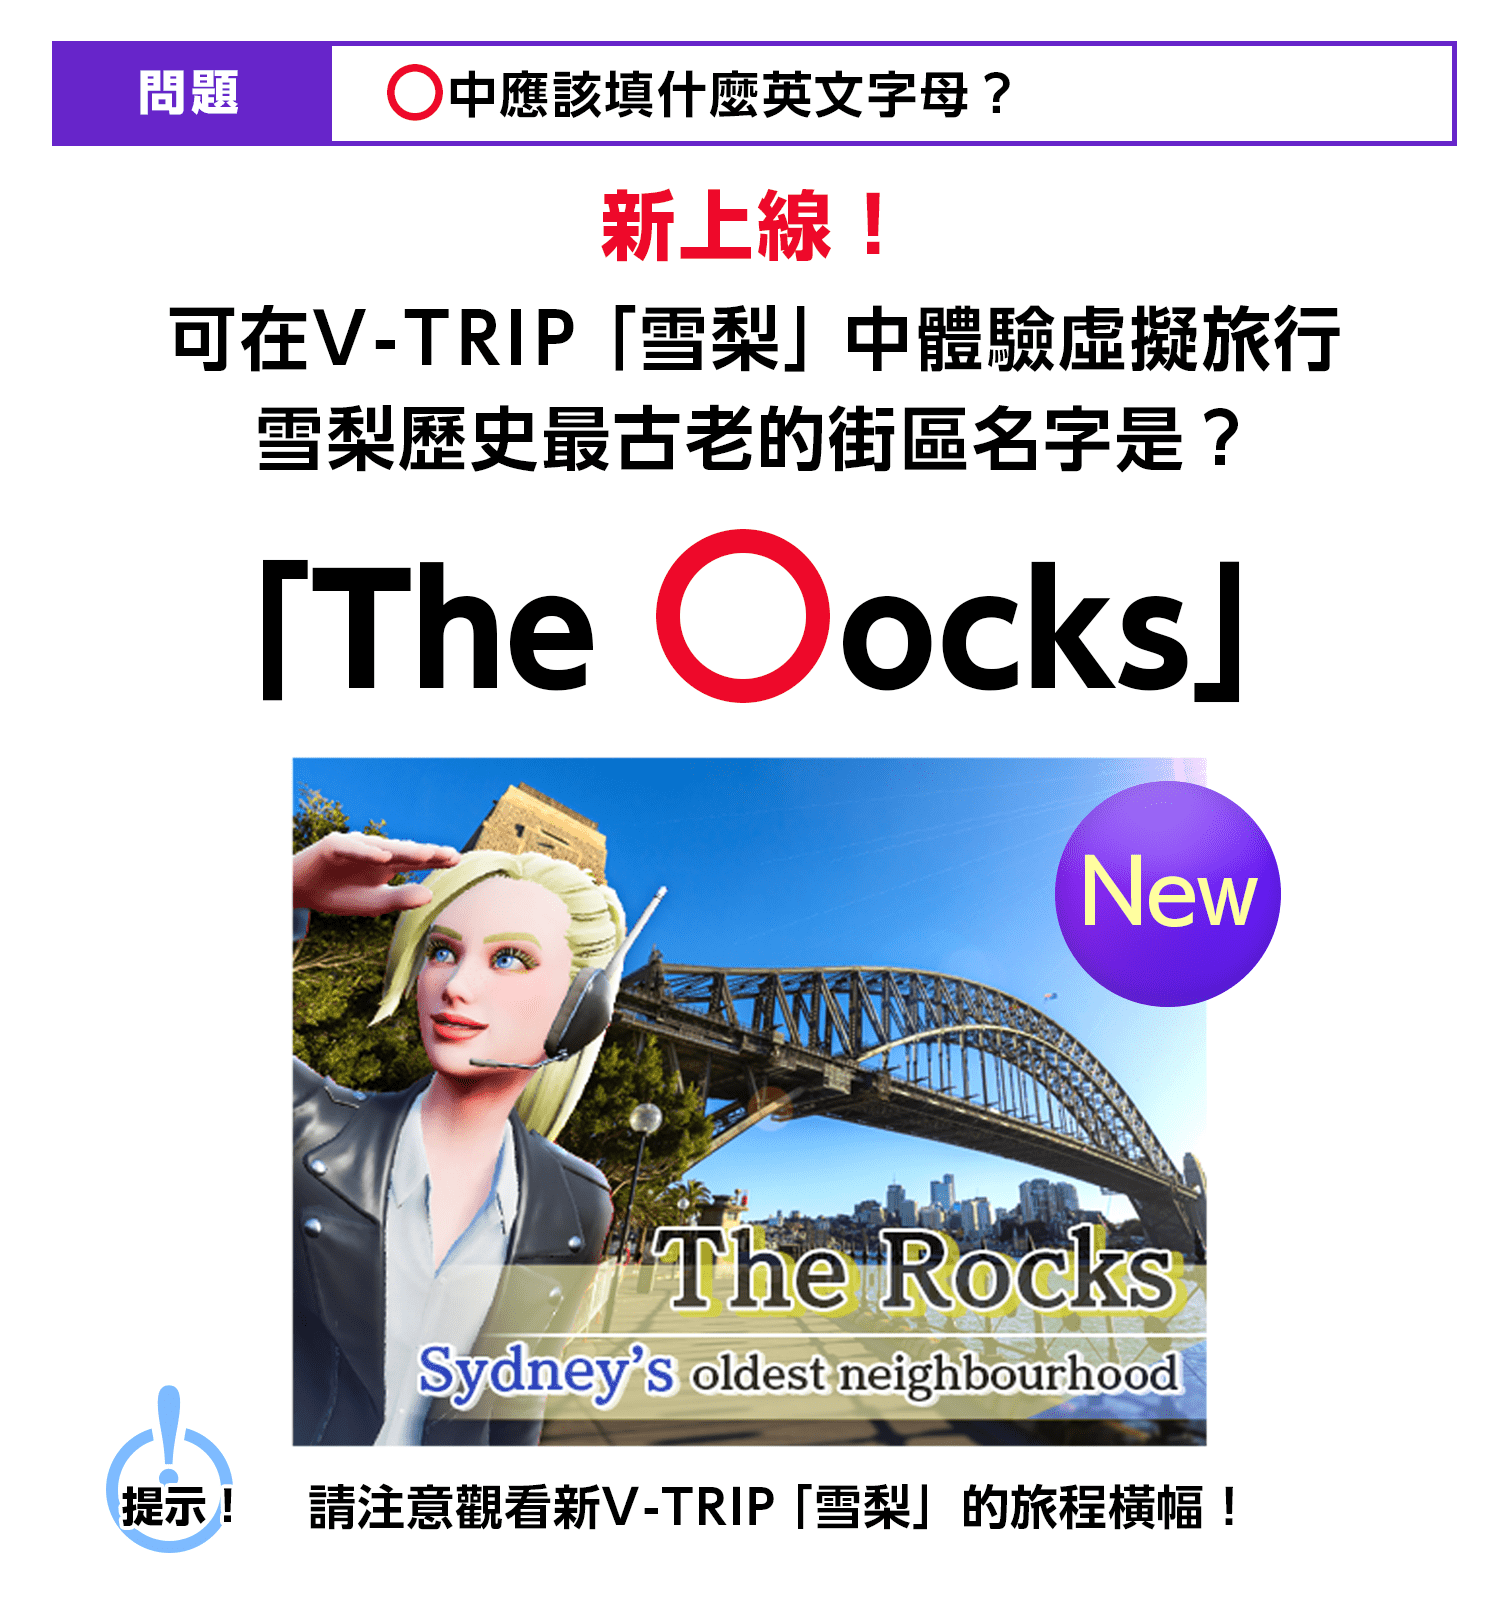 〇中應該填什麼英文字母？新上線！可在V-TRIP「雪梨」中體驗虛擬旅行 雪梨歷史最悠久的街區名字是？「The 〇ocks」提示！請注意觀看新V-TRIP「雪梨」的旅程橫幅！